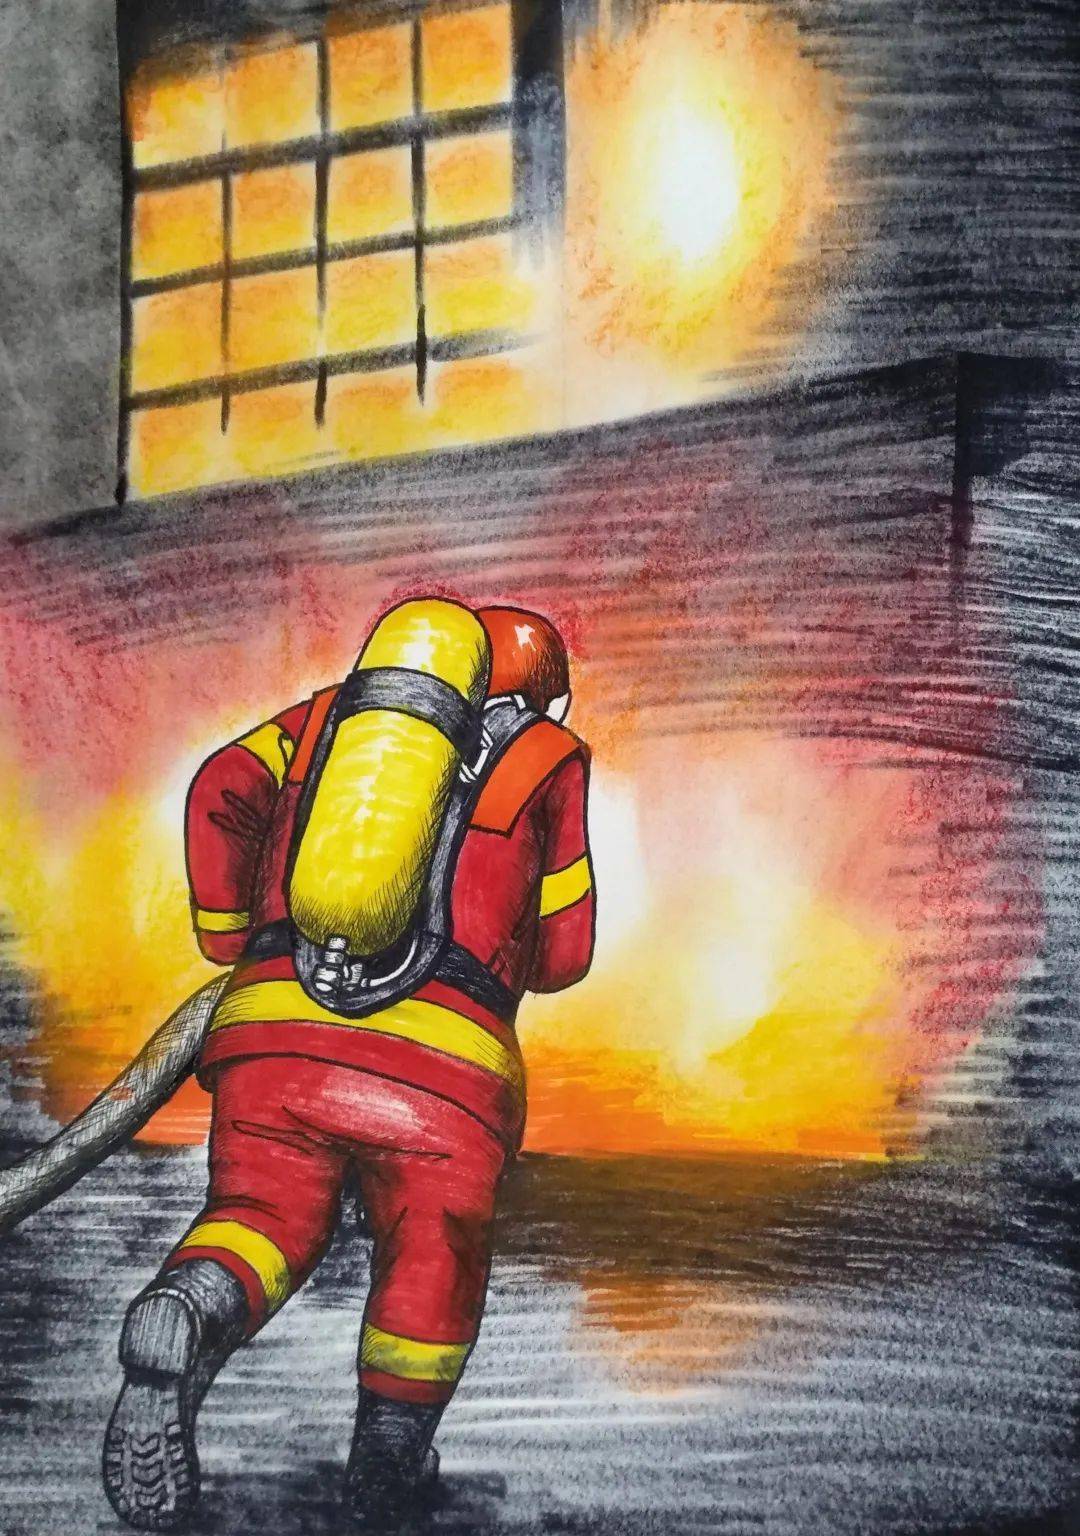 "我是小小消防员"绘画比赛获奖名单出炉!有你家娃的作品吗?